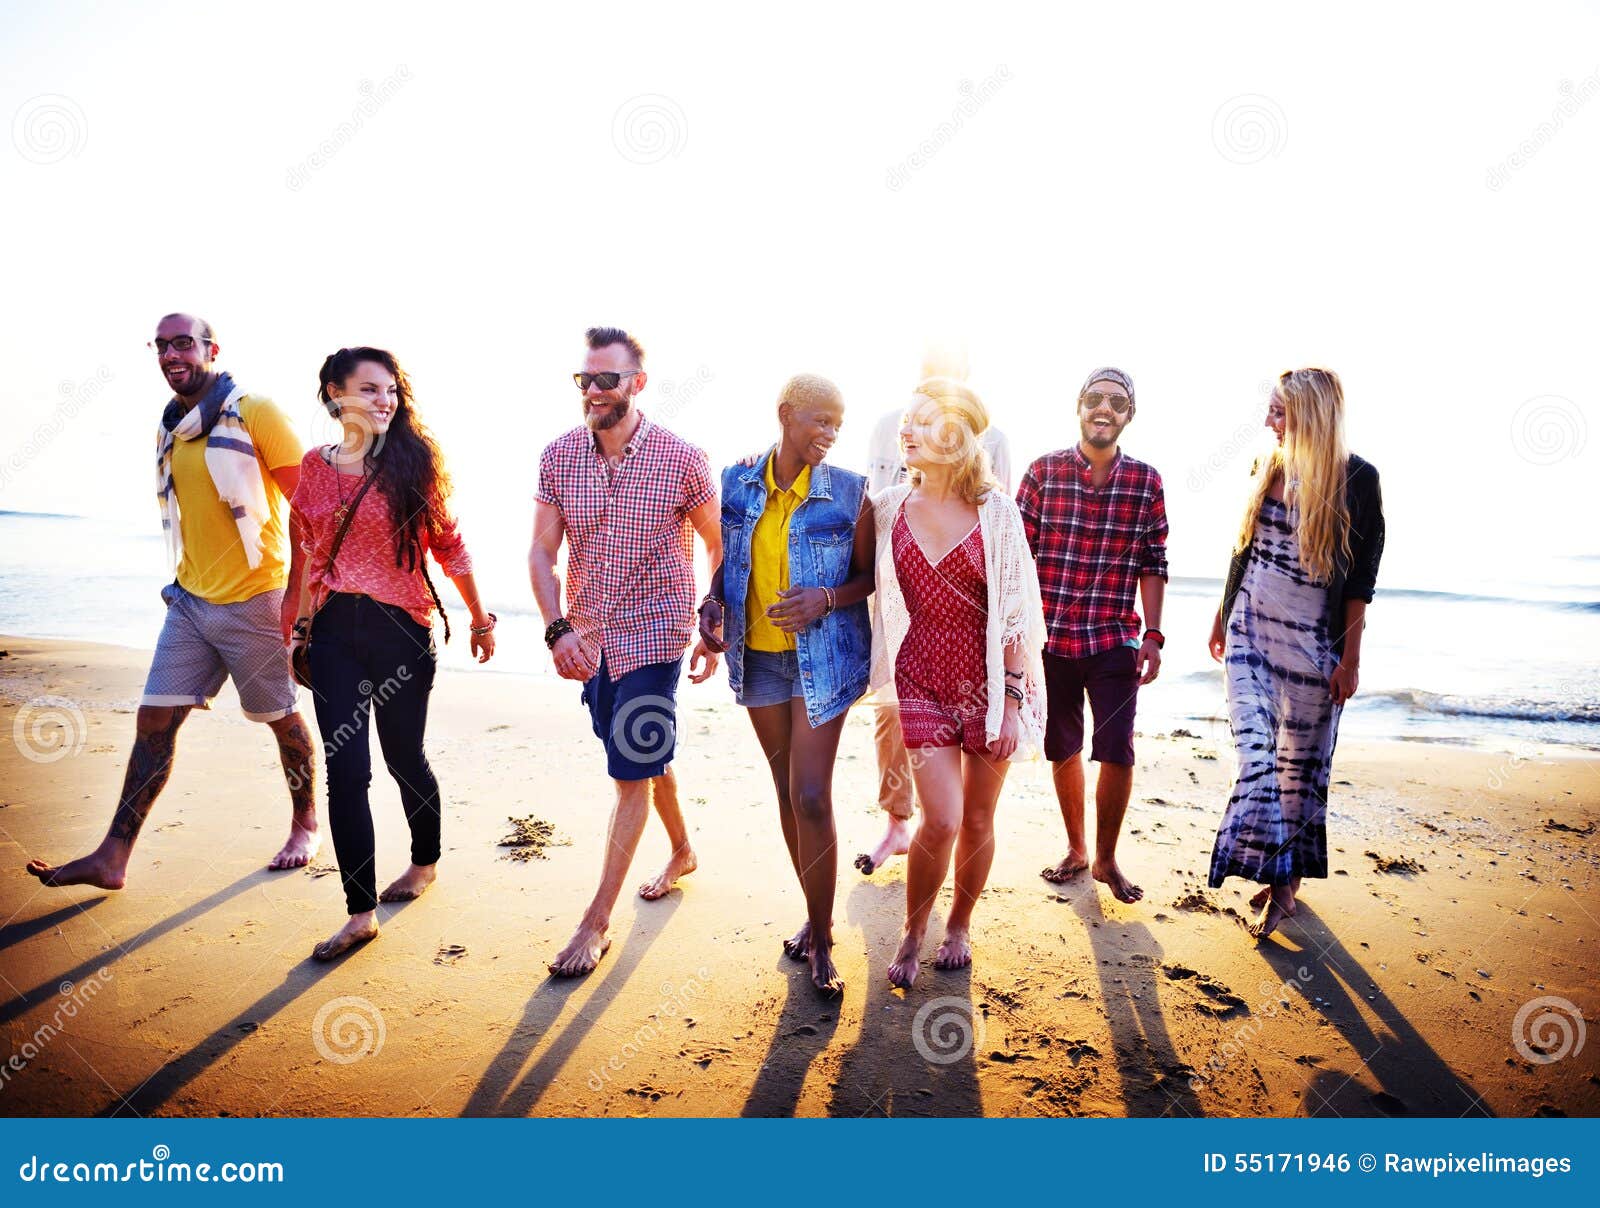 diverse beach summer friends fun bonding concept